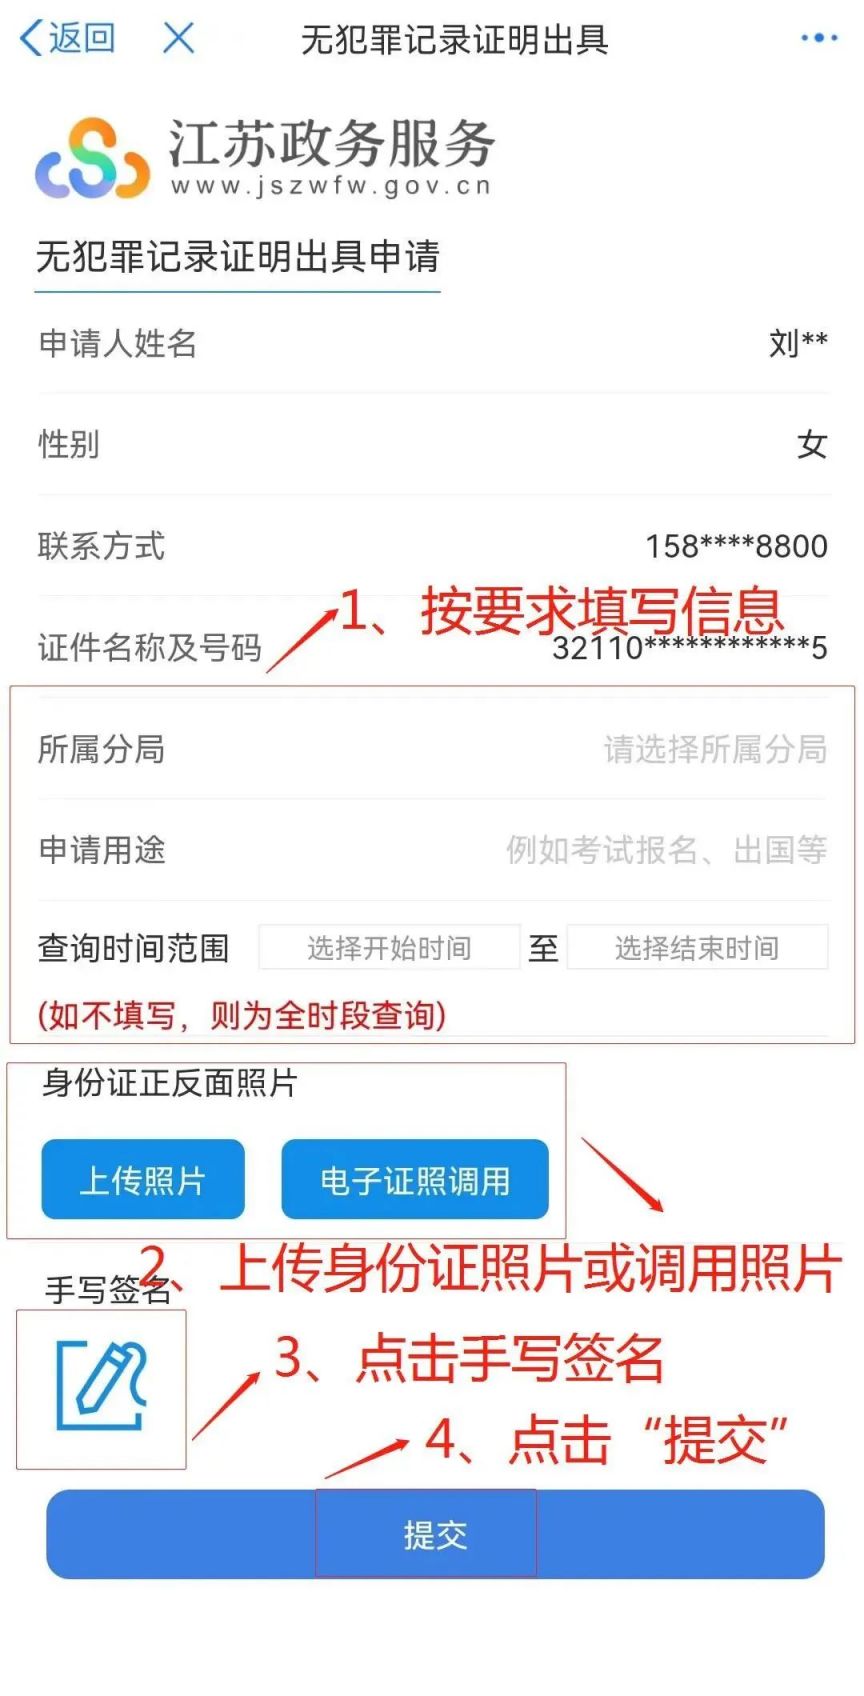 扬州无犯罪证明的网上申请流程及入口